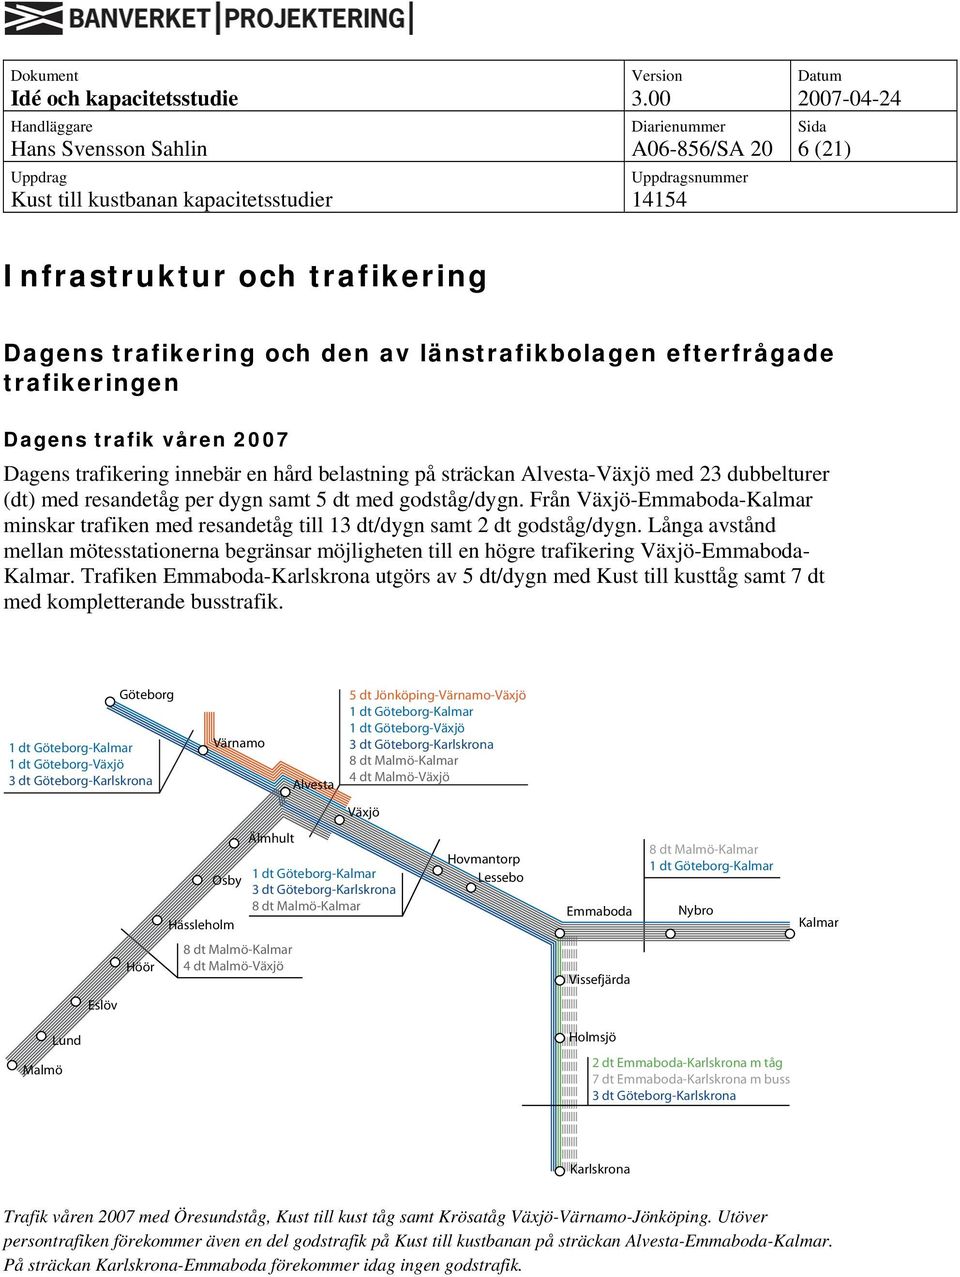 Långa avstånd mellan mötesstationerna begränsar möjligheten till en högre trafikering Växjö-- Kalmar.